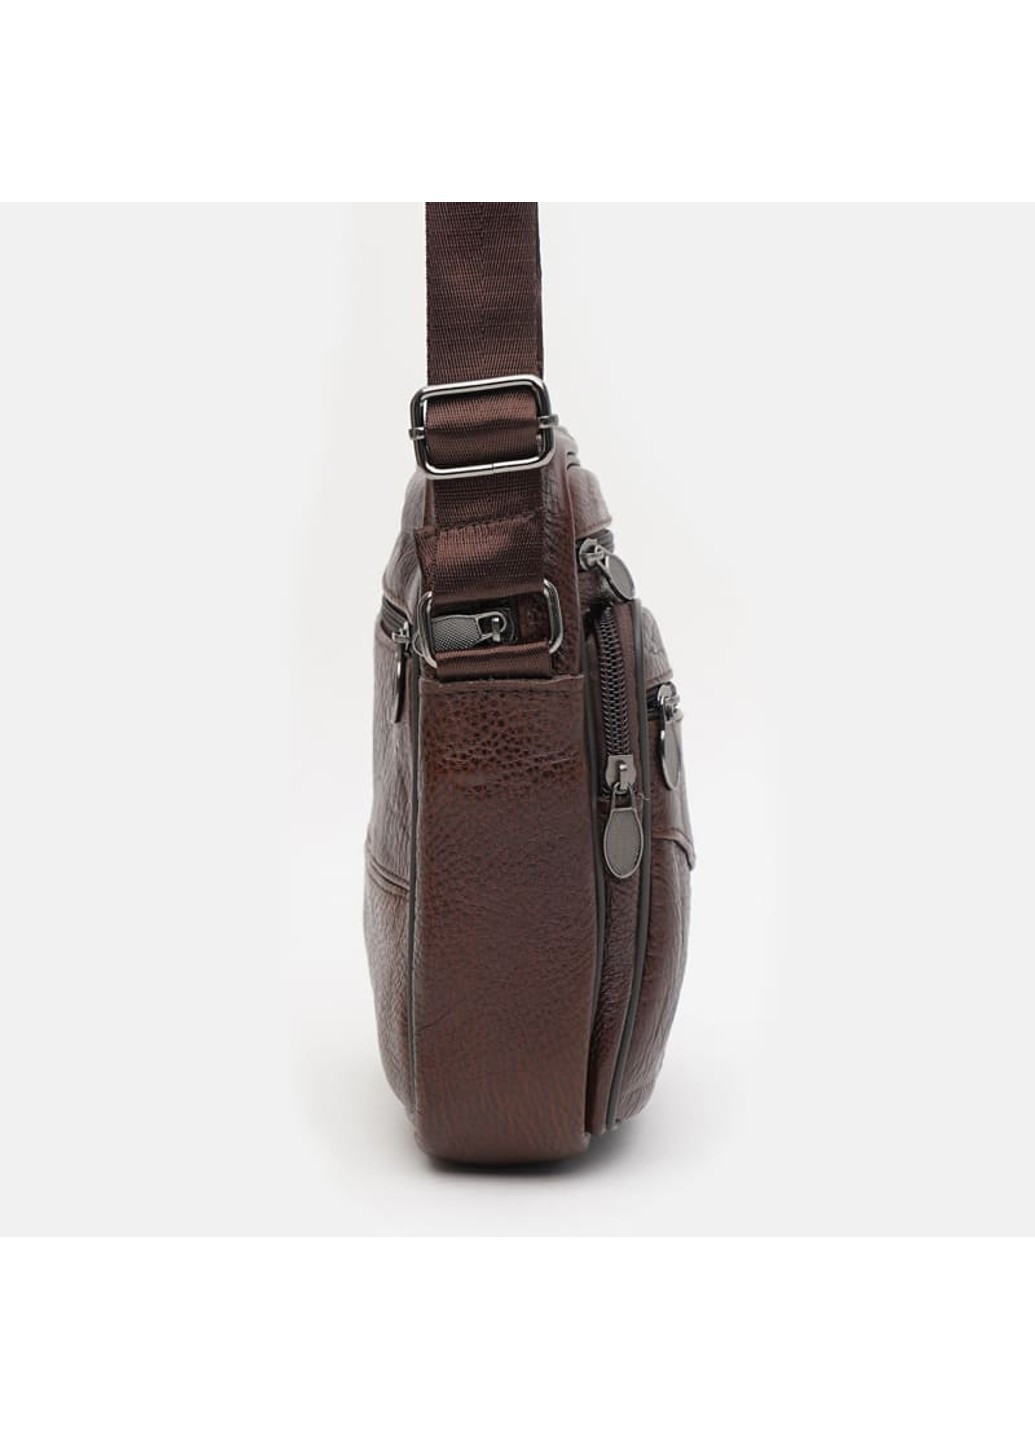 Мужская кожаная сумка K19970br-brown Keizer (266143507)